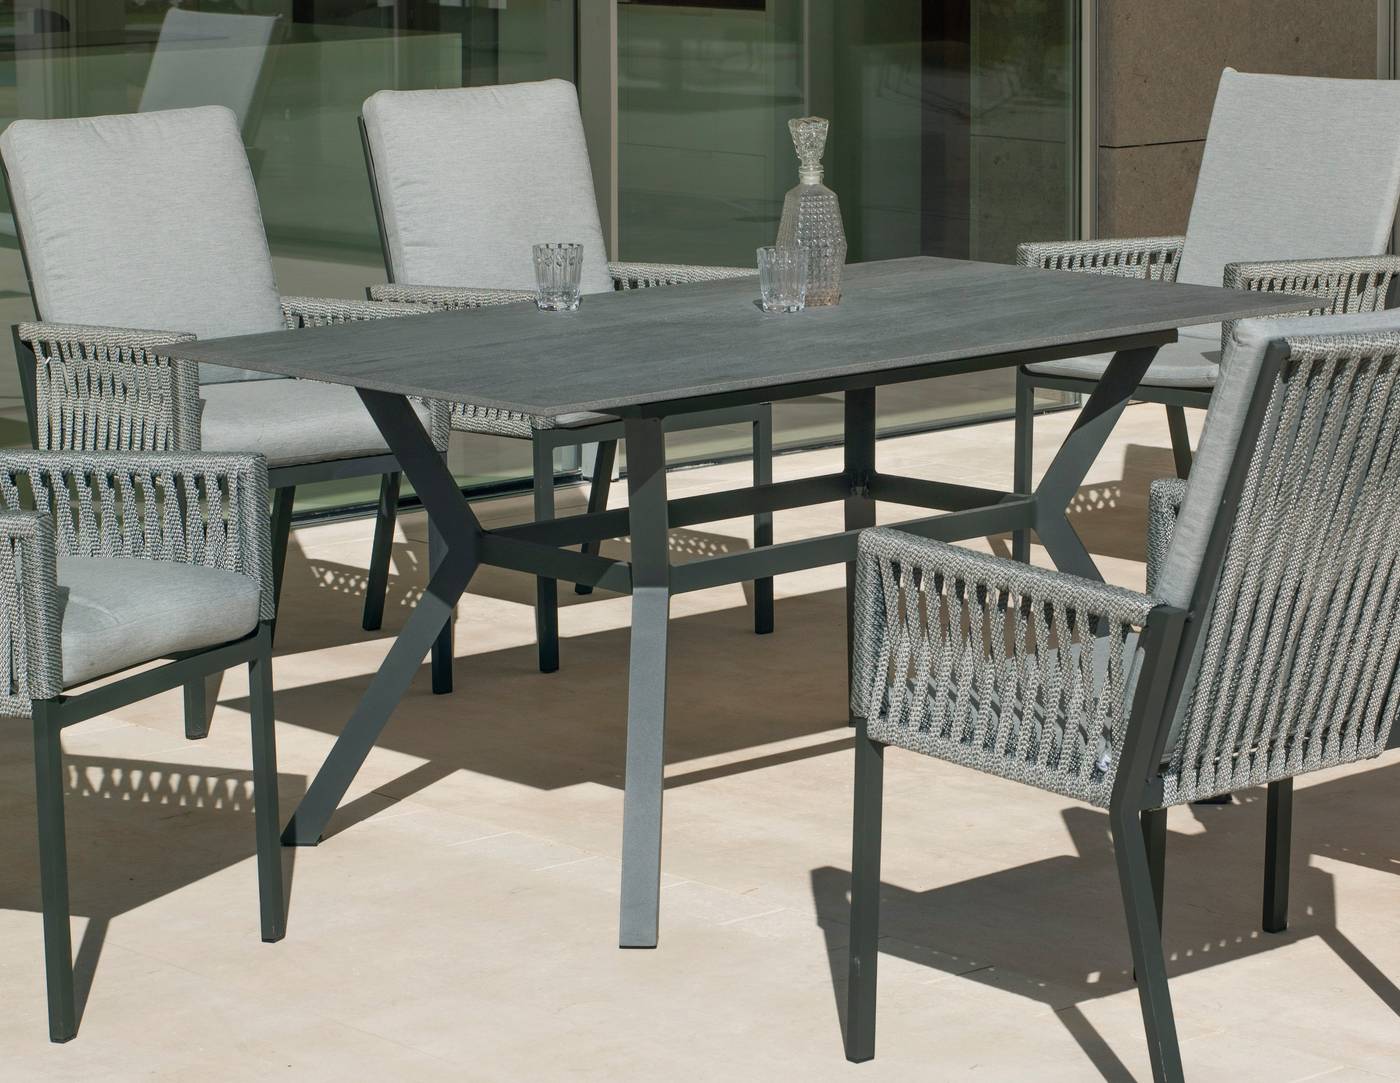 Mesa de aluminio rectangular de 160 cm, con tablero de piedra sinterizada de alta calidad. Disponible en varios colores.